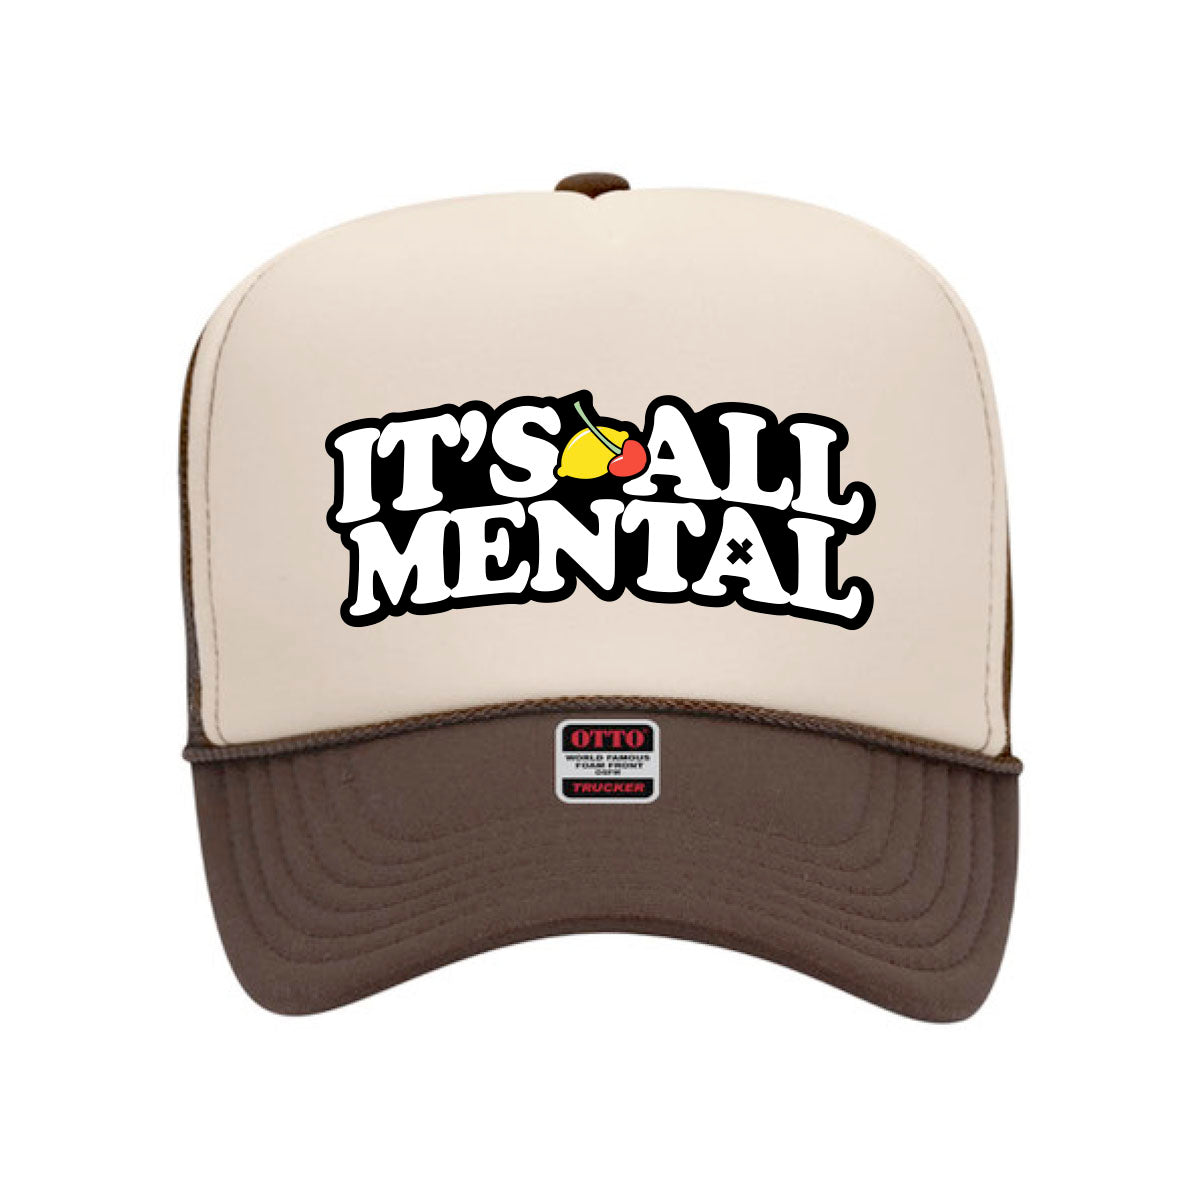 "Its All Mental" Tan Trucker Hat